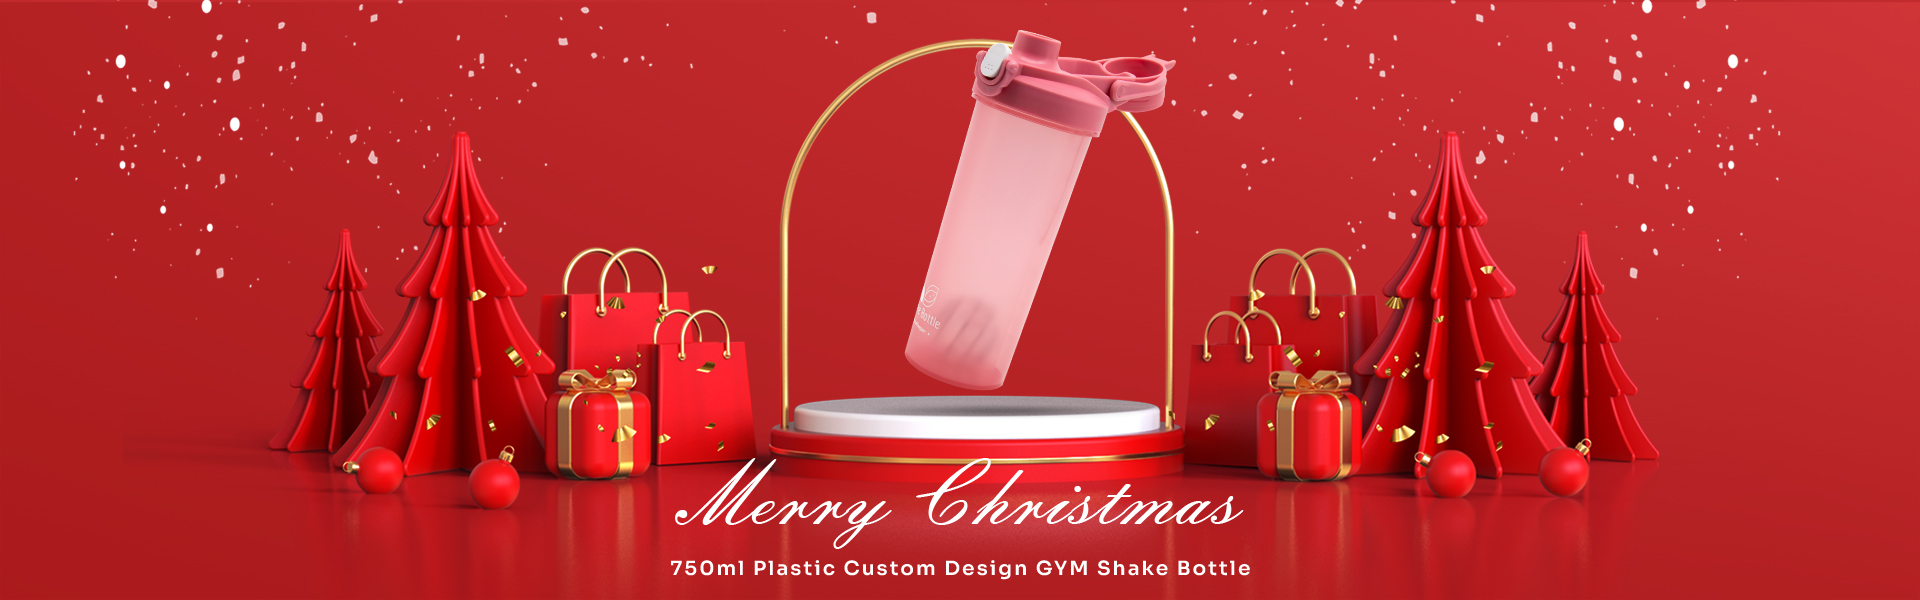 750ml Plastik Özel Tasarım GYM Shake Şişesi